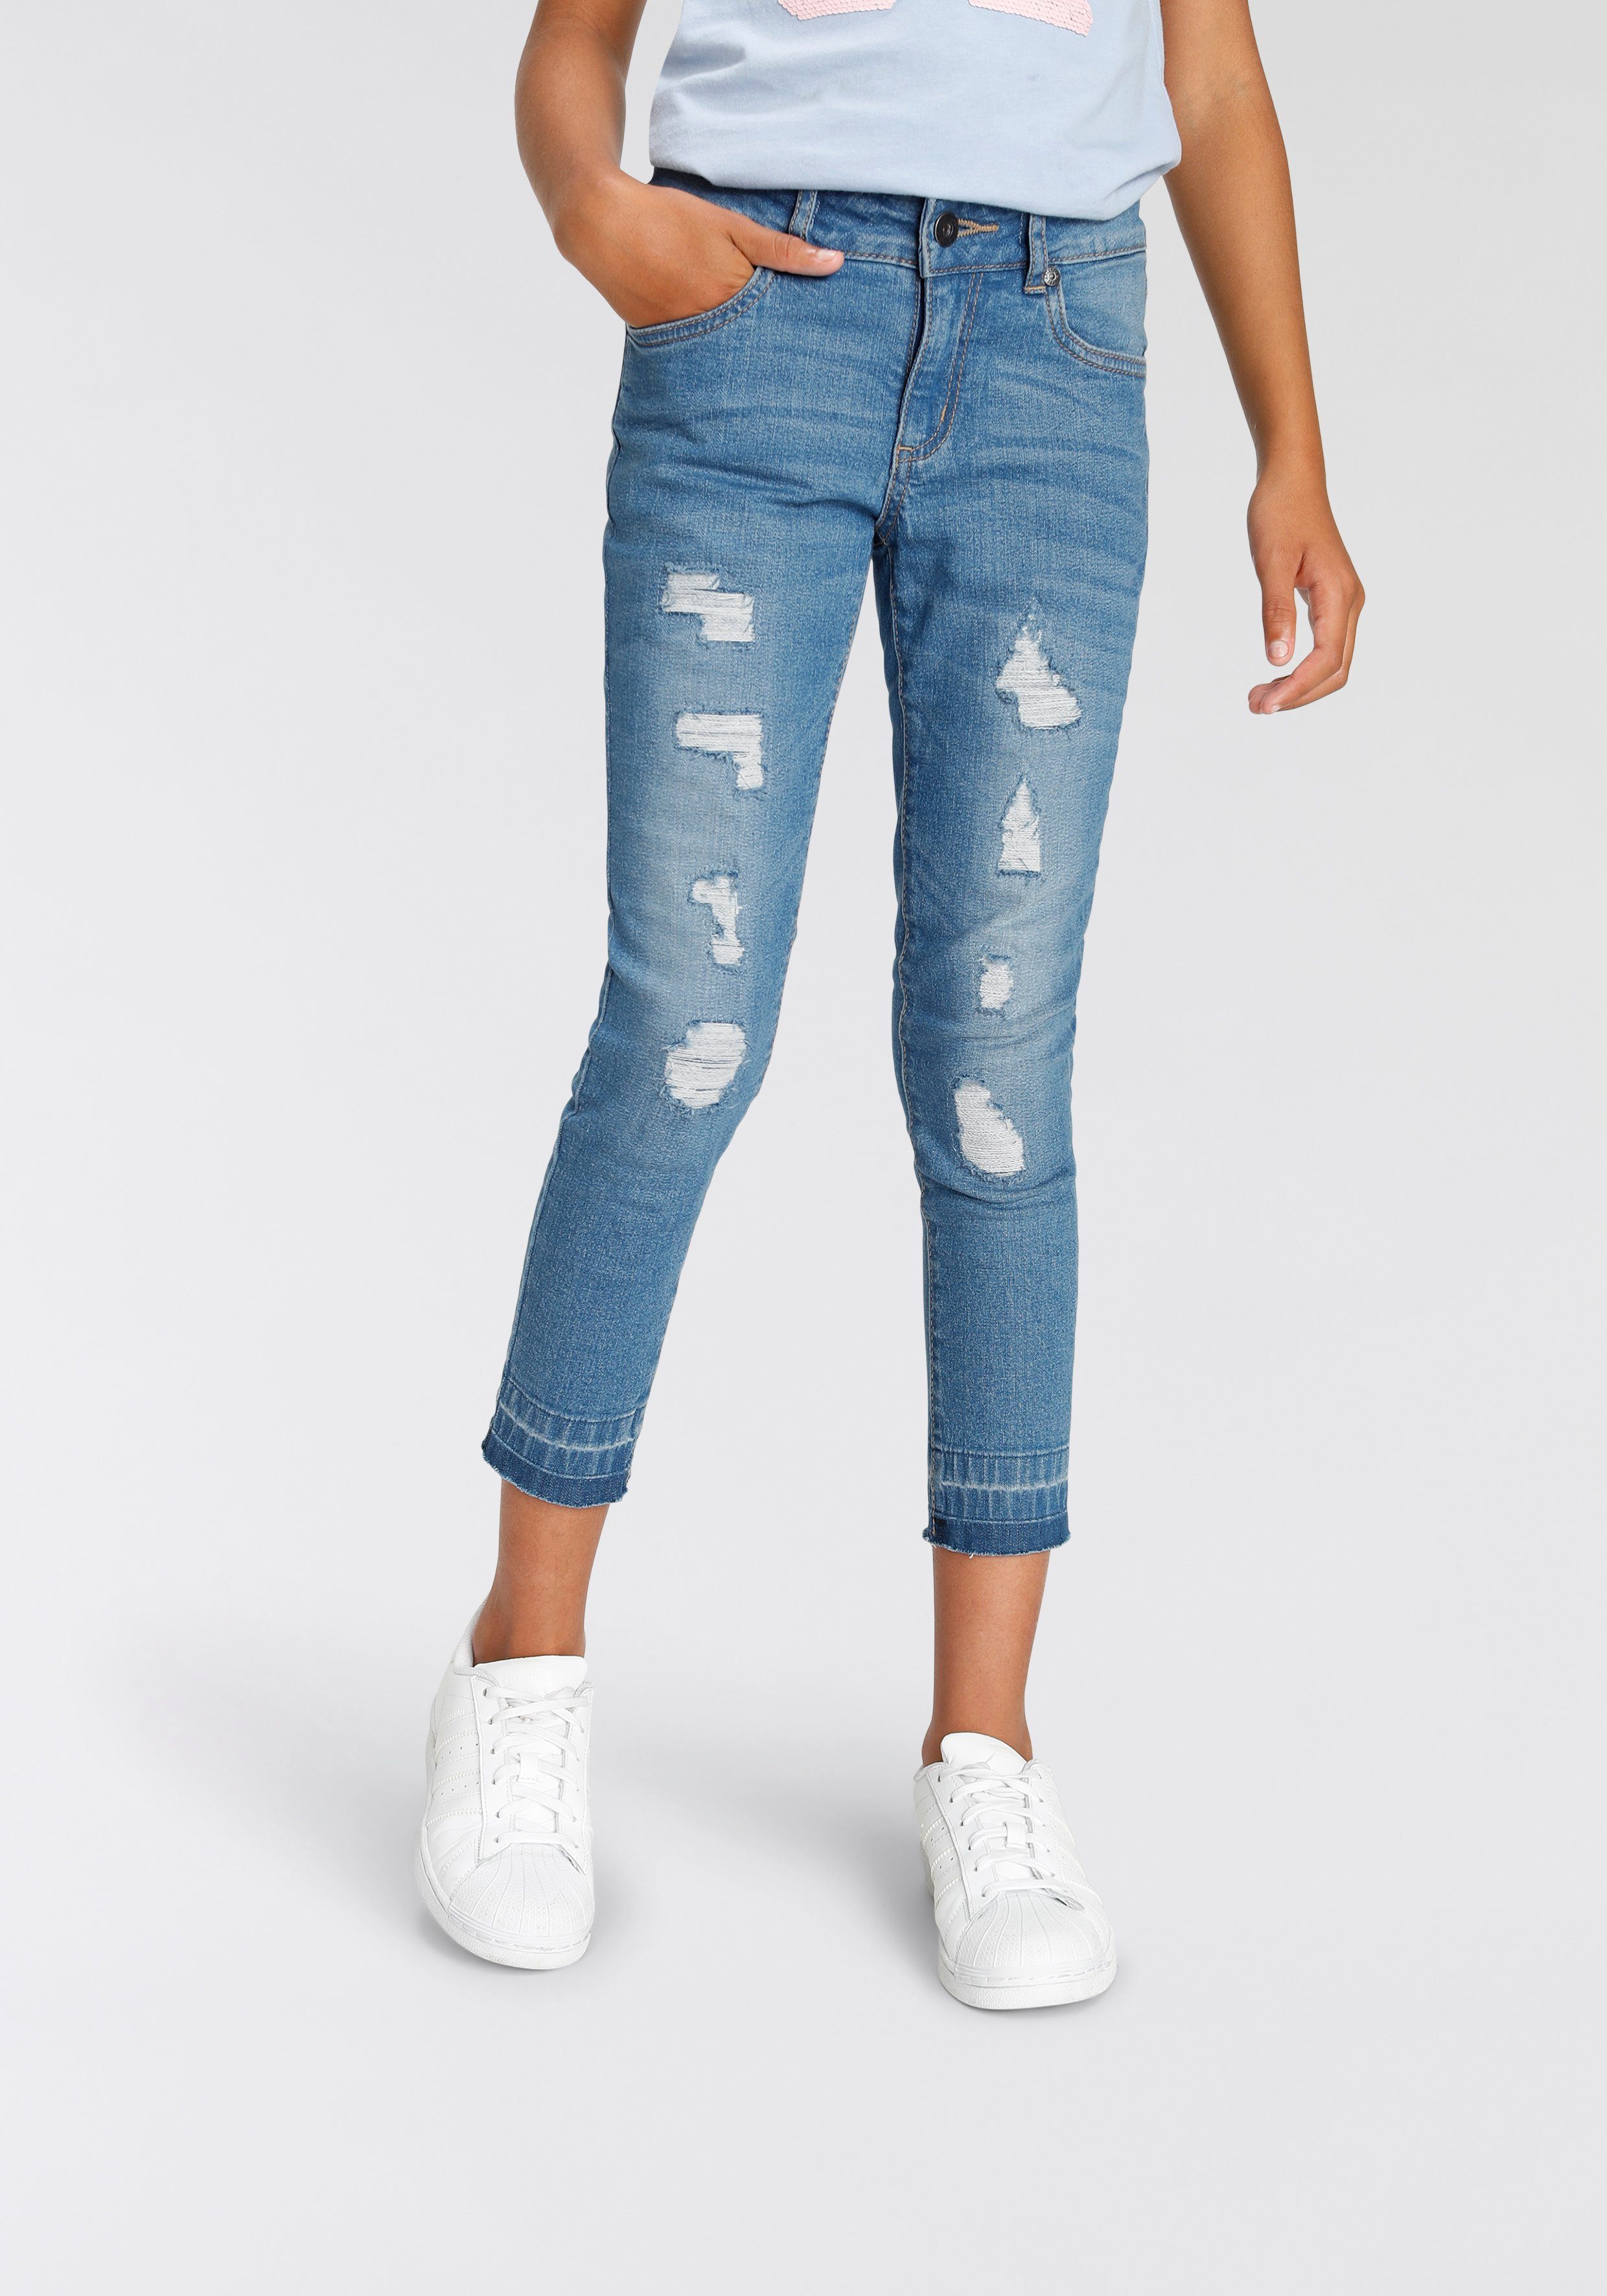 Arizona 7/8-Jeans für Mädchen Skinny